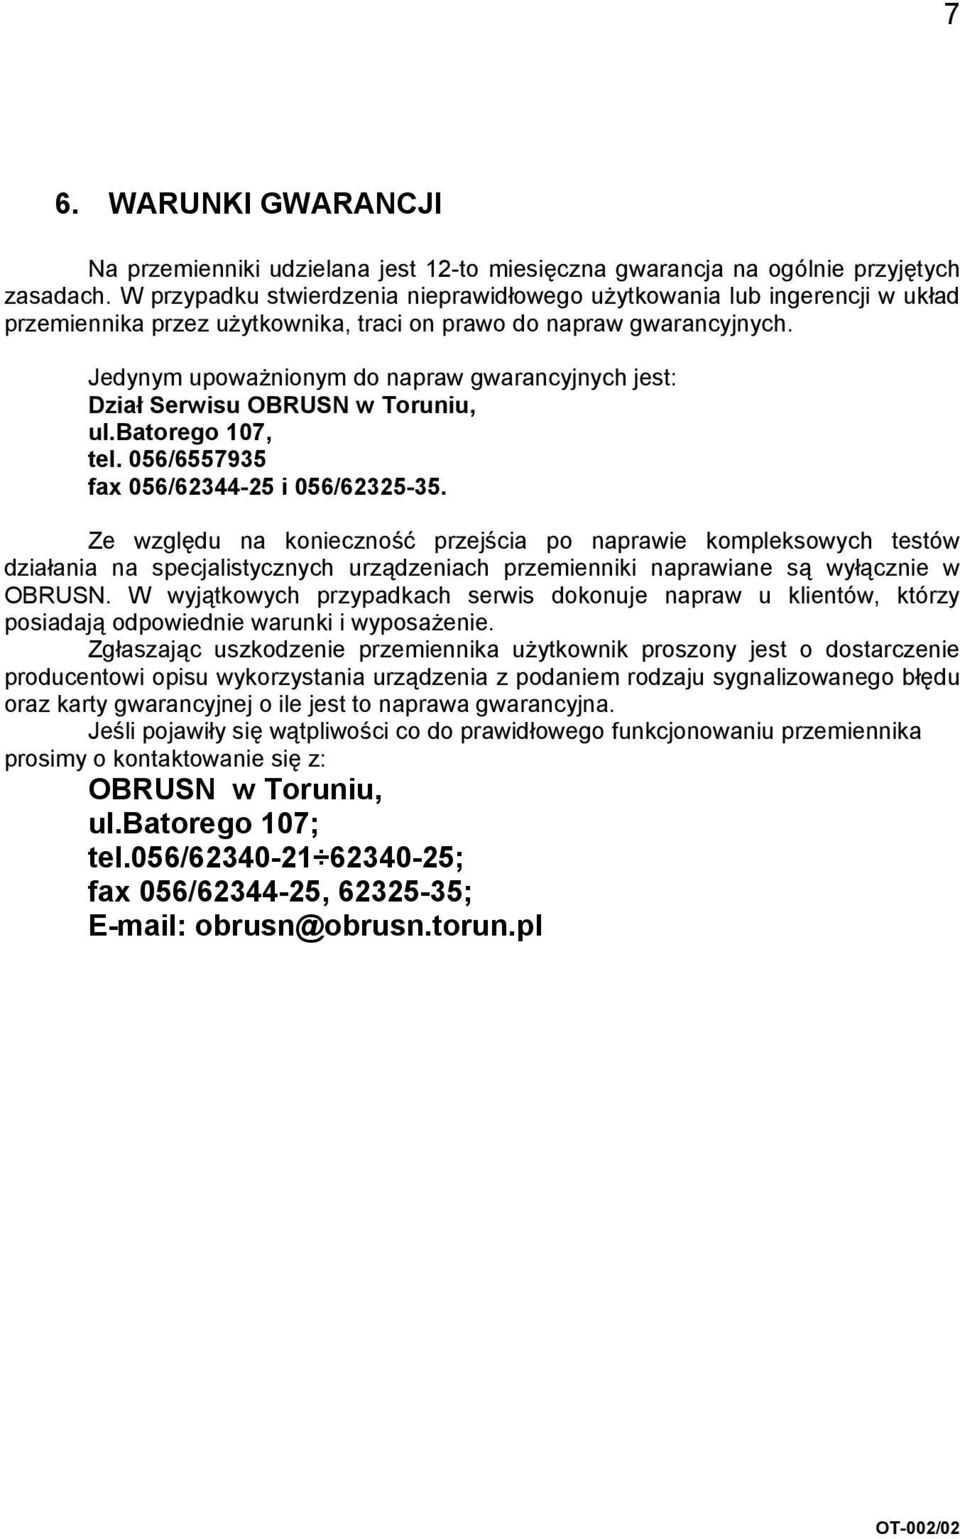 Jedynym upoważnionym do napraw gwarancyjnych jest: Dział Serwisu OBRUSN w Toruniu, ul.batorego 107, tel. 056/6557935 fax 056/62344-25 i 056/62325-35.